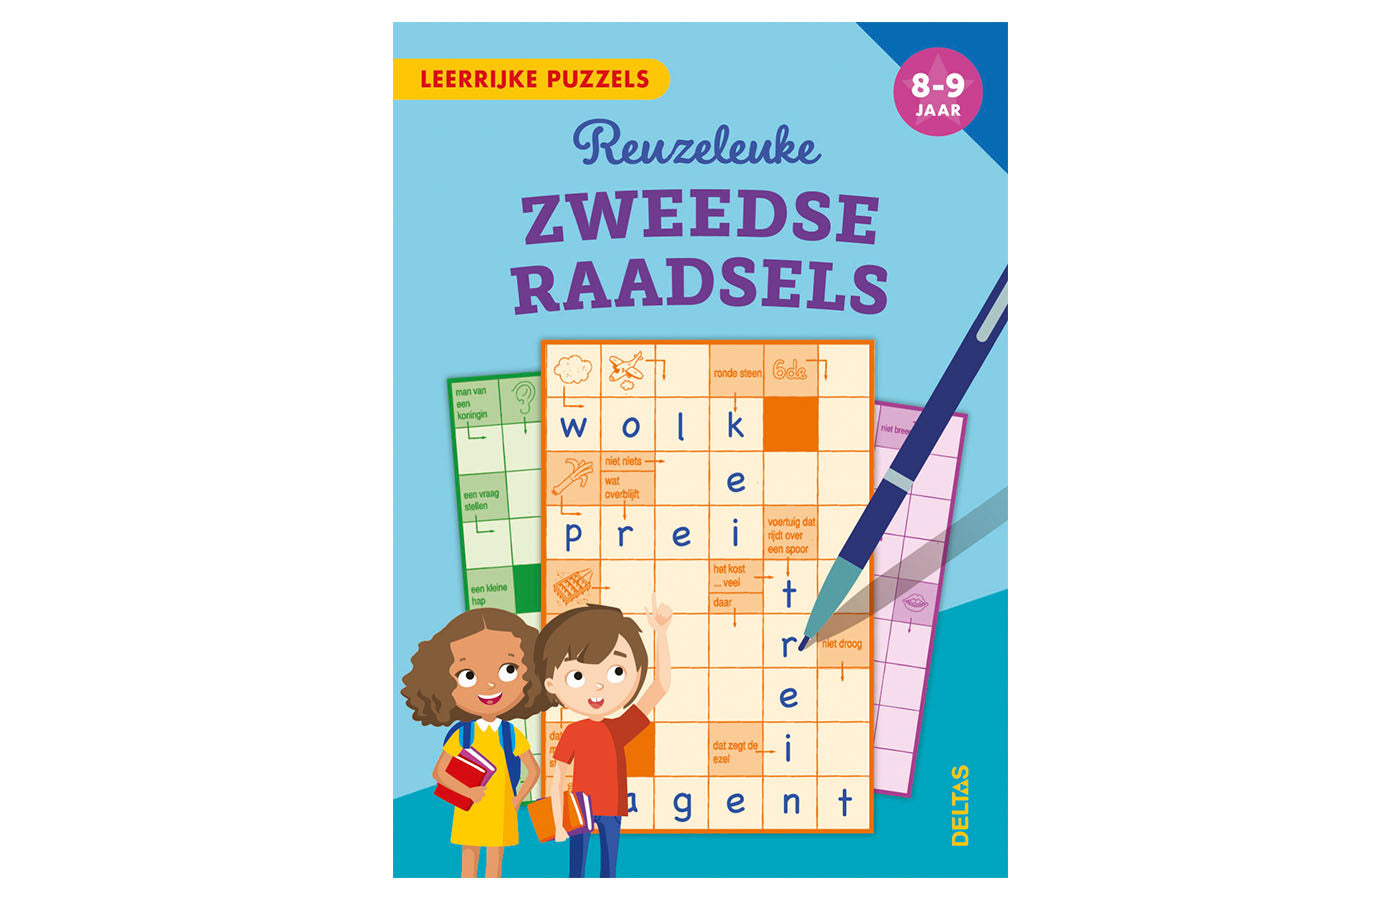 Leerrijke puzzels - zweedse raadsels